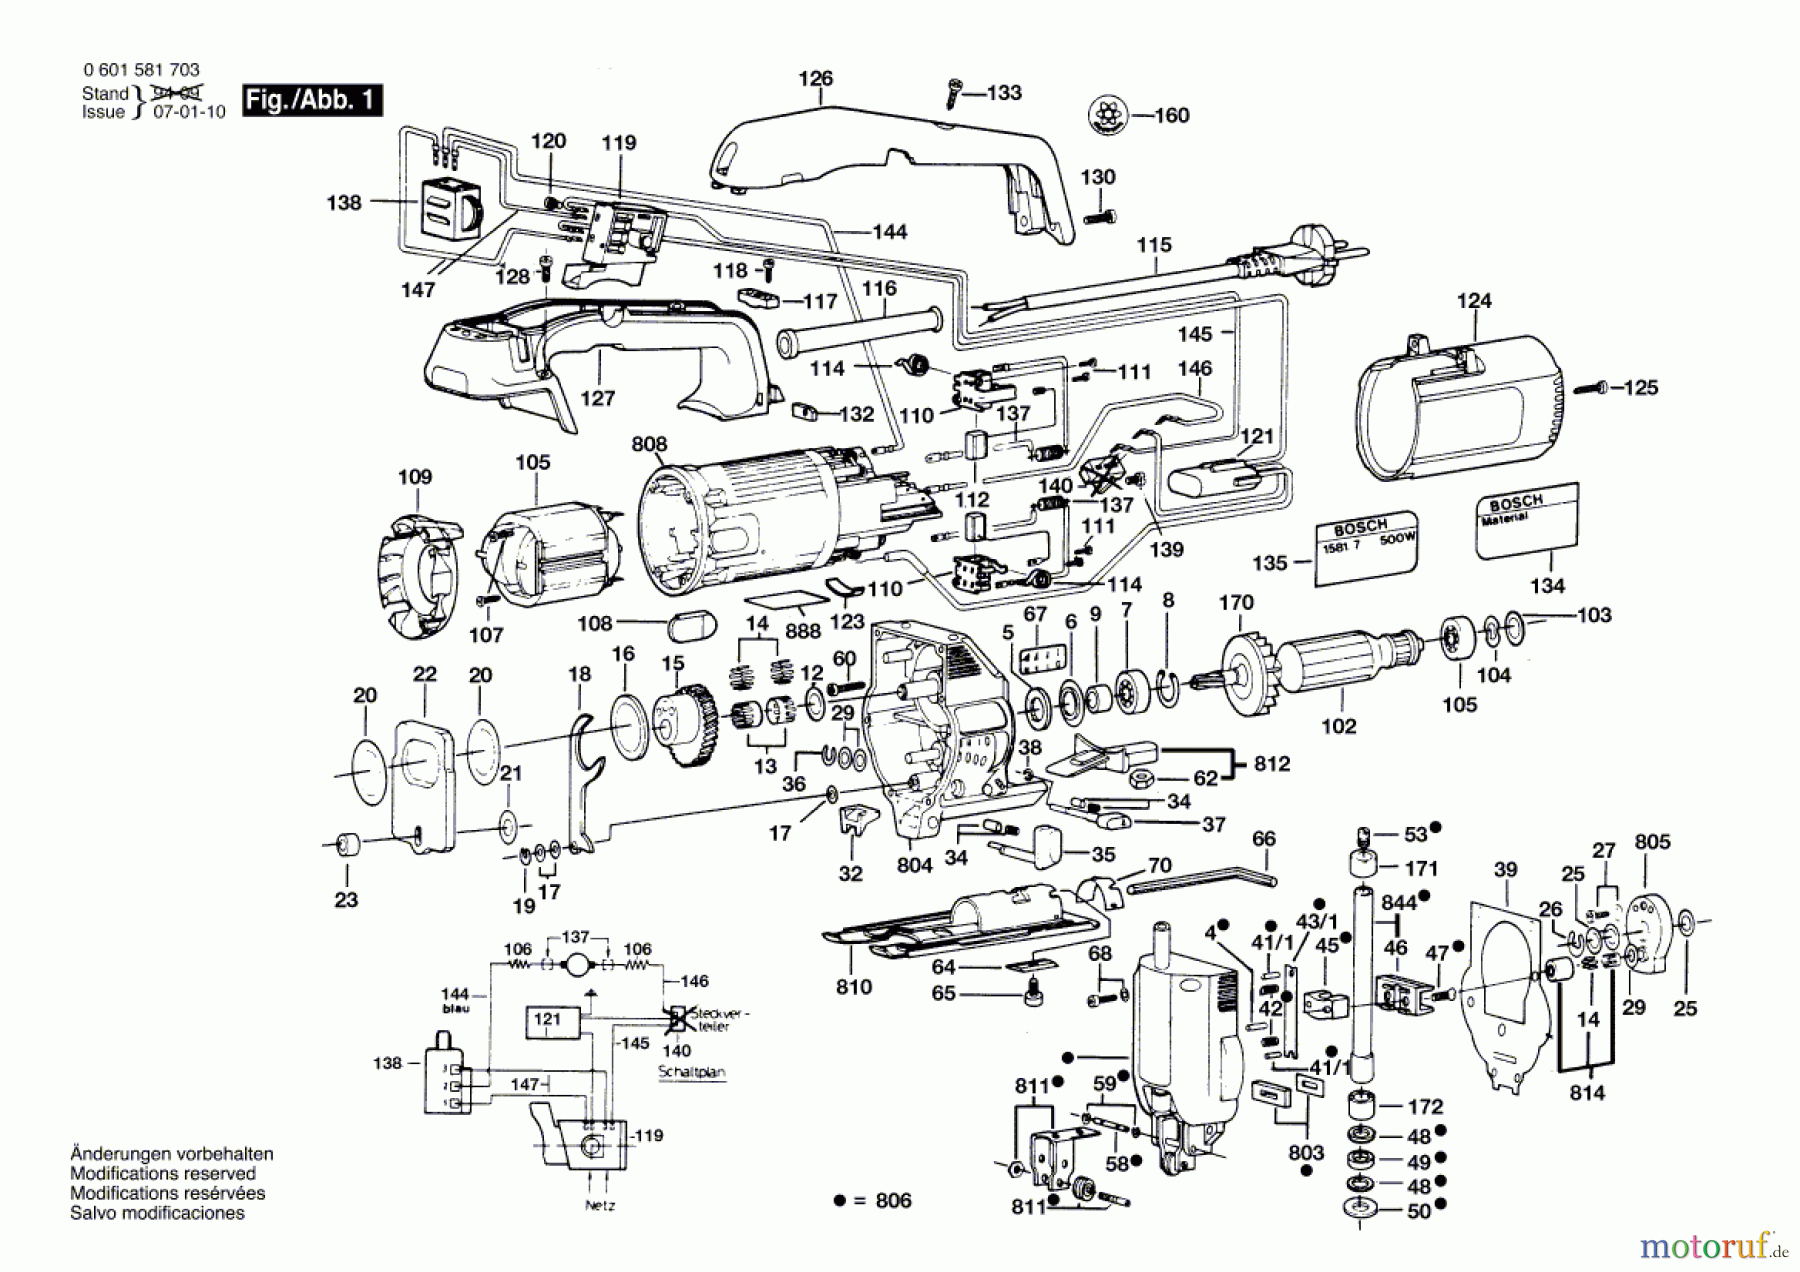  Bosch Werkzeug Pendelstichsäge ---- Seite 1